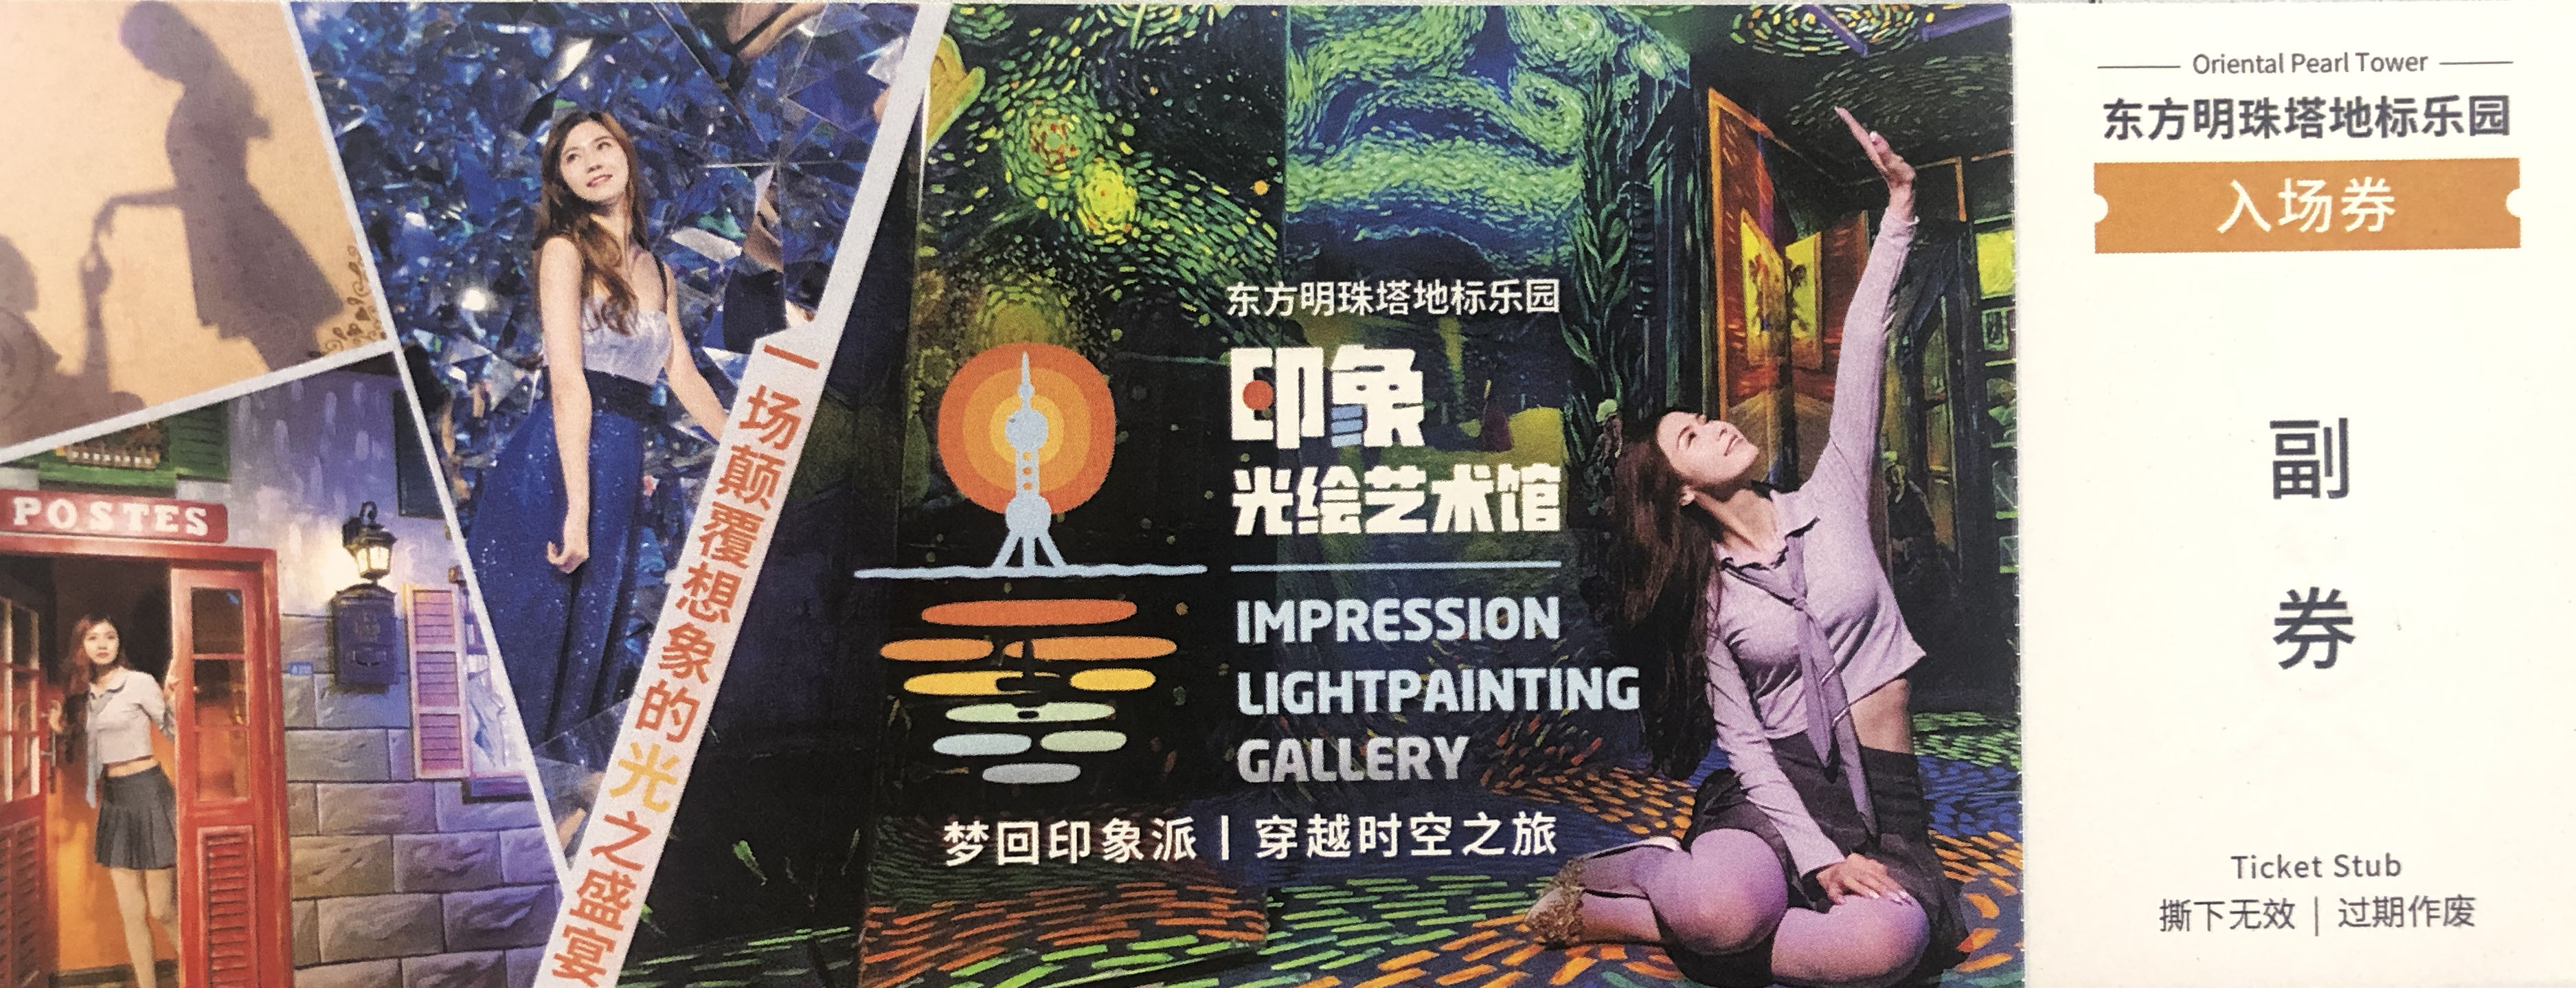 上海 印象光绘艺术馆门票!(一人两张)